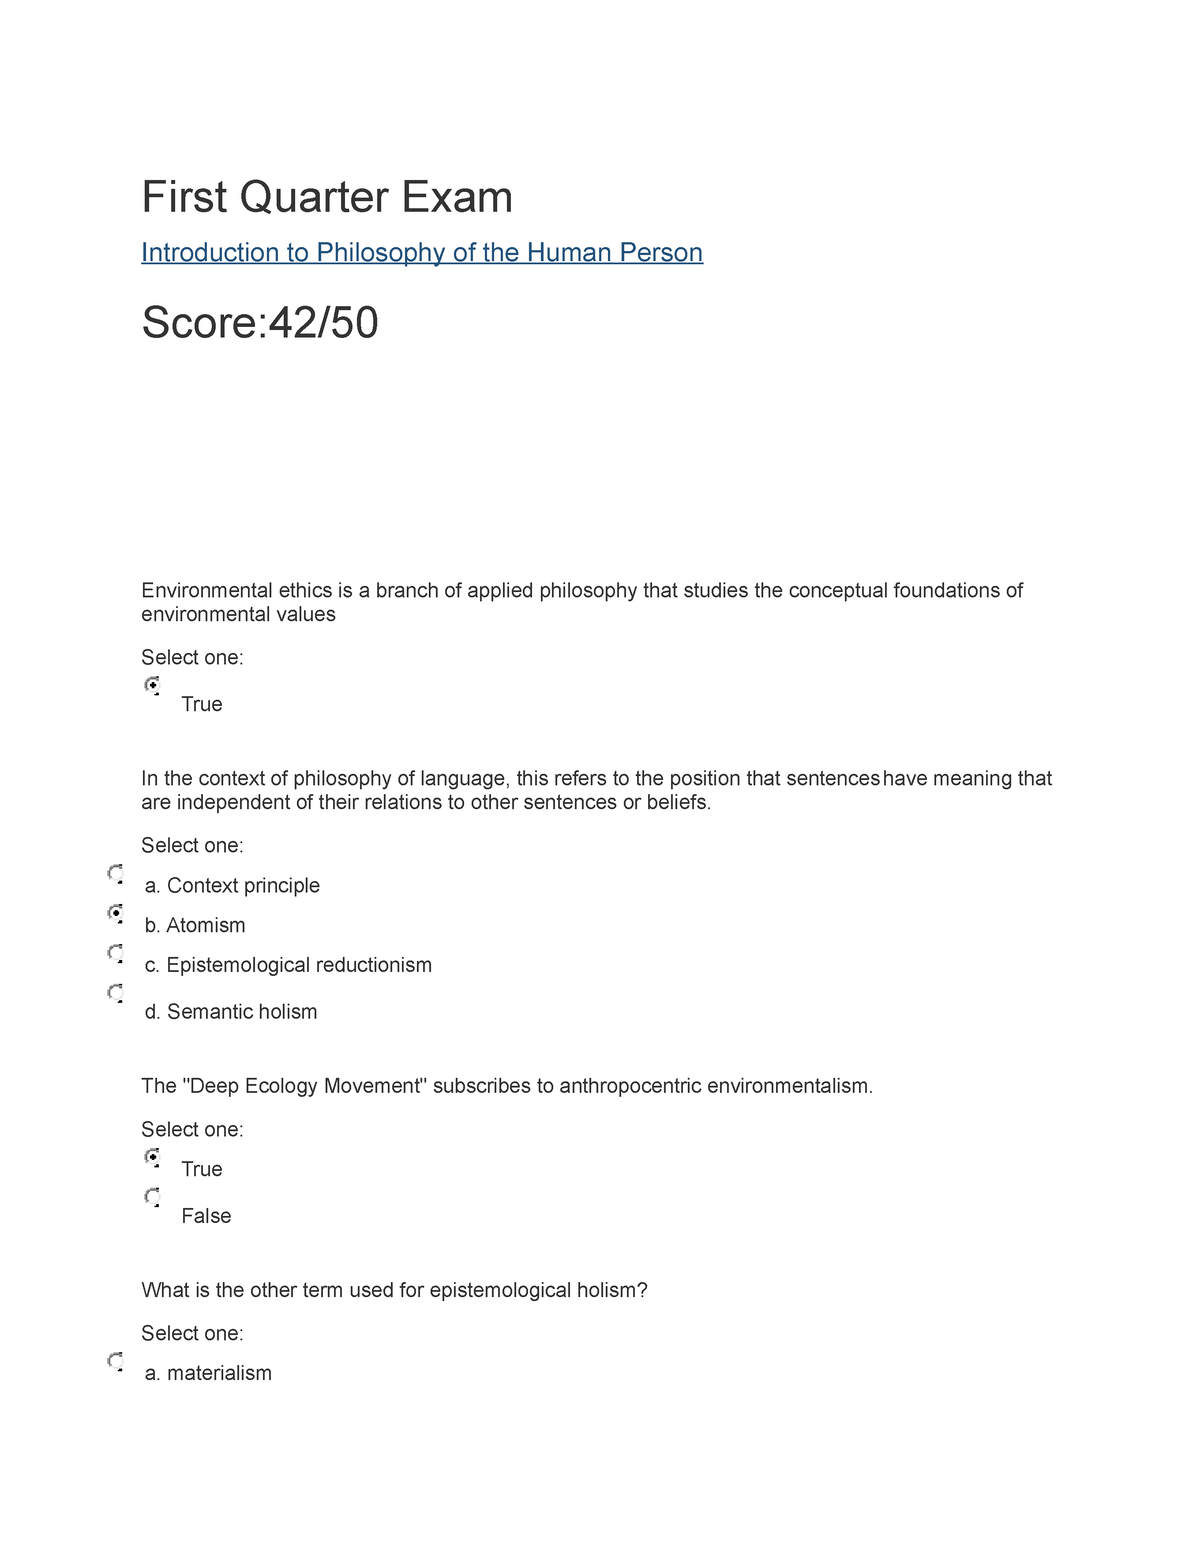 First Quarter Exam Philosopy Grade 11 First Quarter Exam Introduction To Philosophy Of The 5491